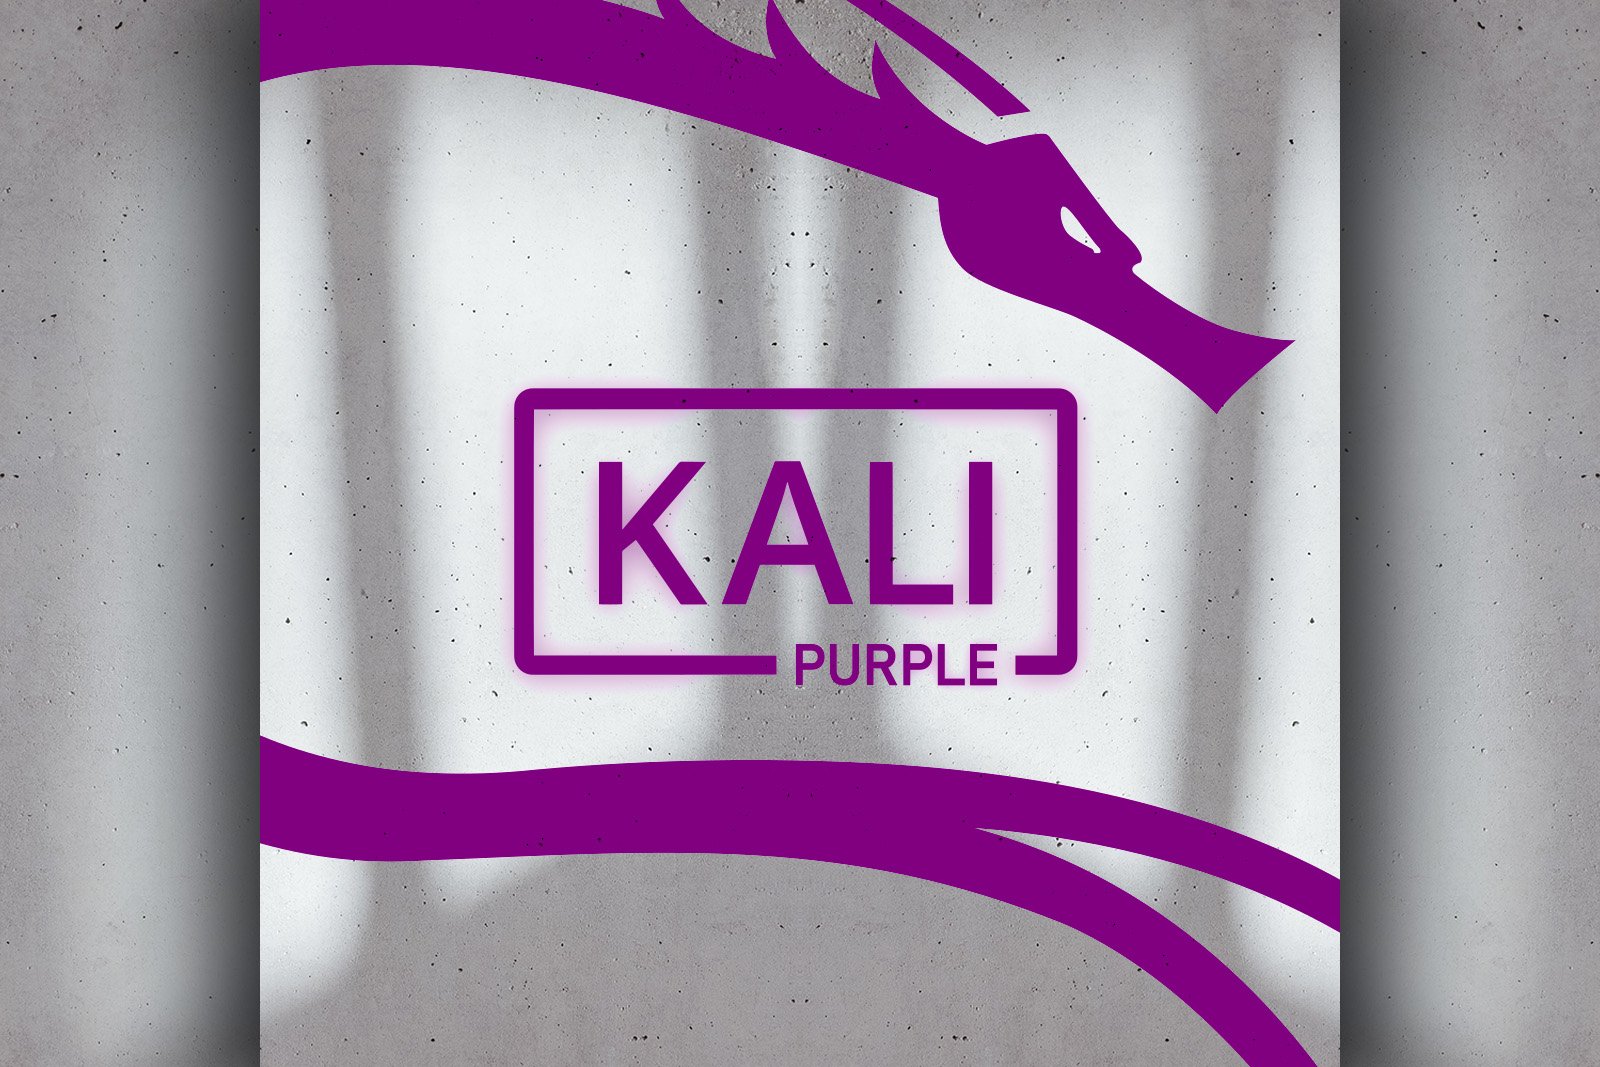 Kali Linux 2023.1 released so is Kali Purple! Net Security